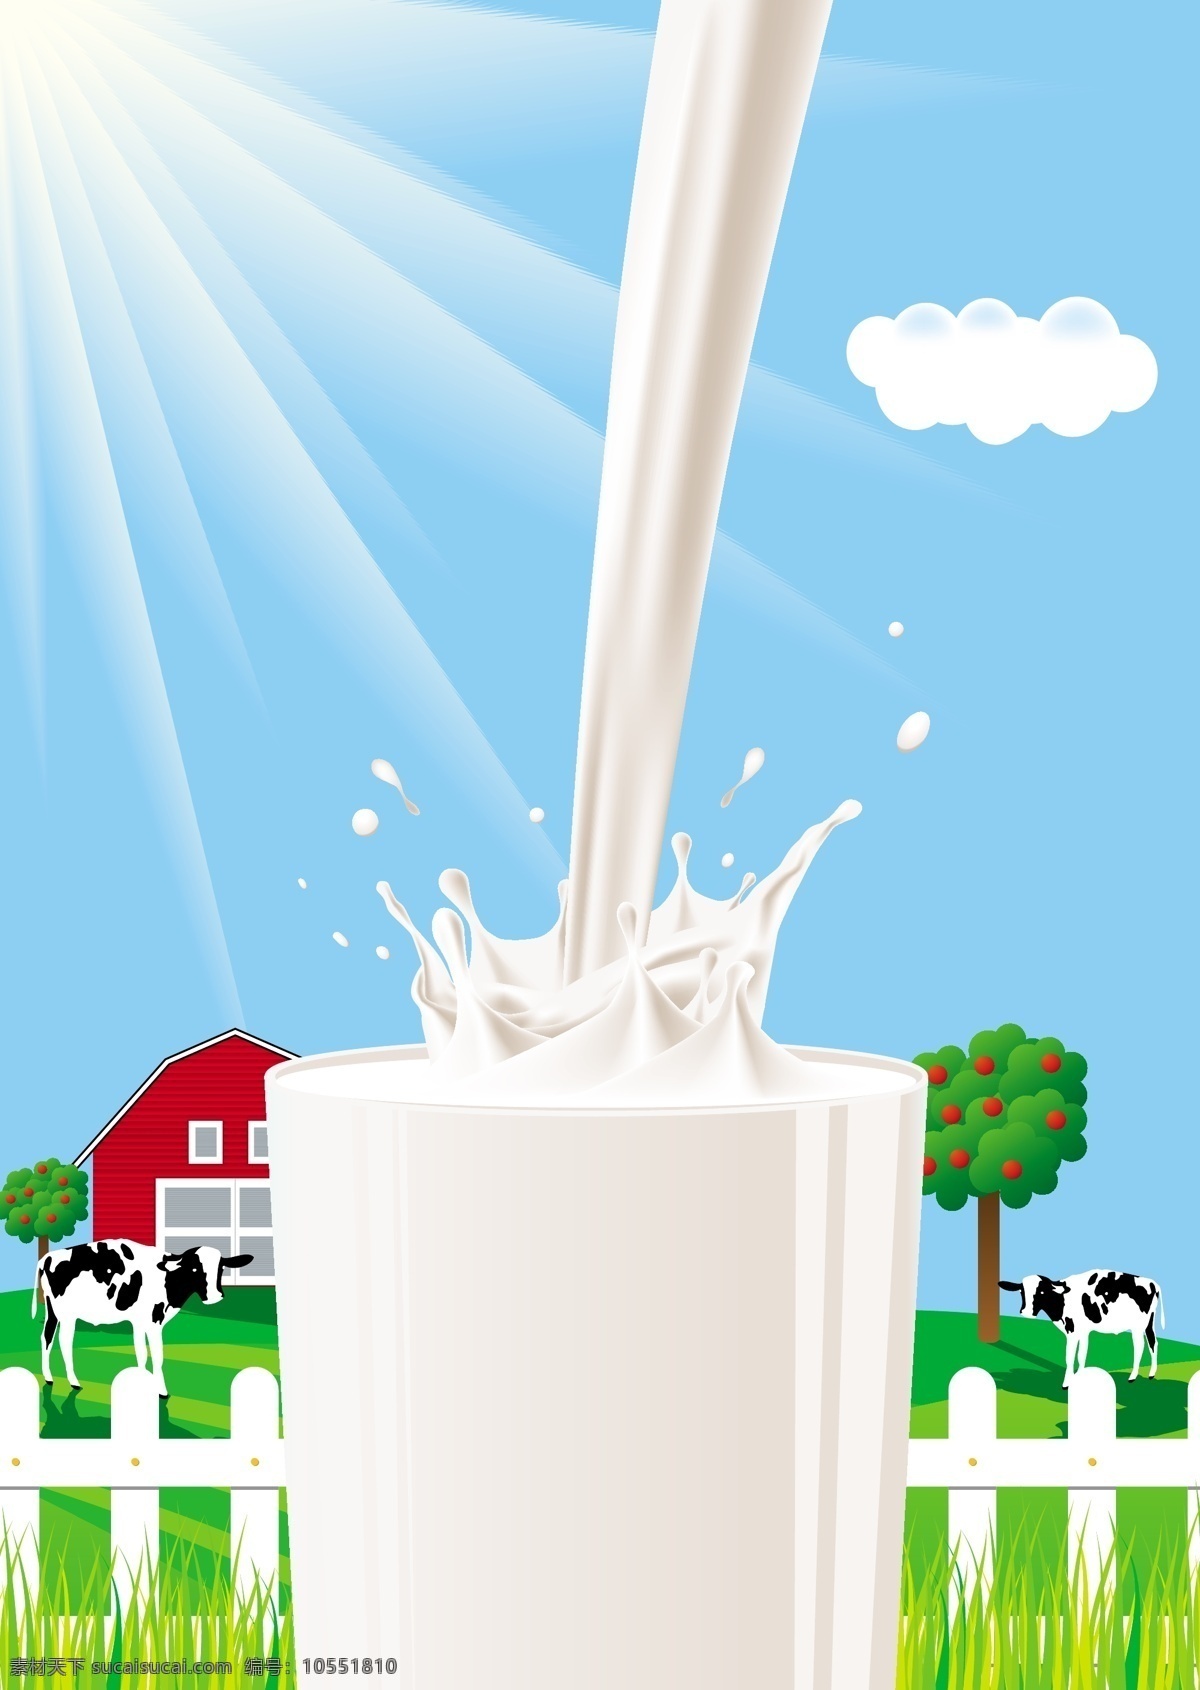 精美 牛奶 矢量 杯子 玻璃杯 草 房子 牧场 奶花 奶牛 农场 矢量素材 鲜奶 倒牛奶 阳光 矢量图 日常生活